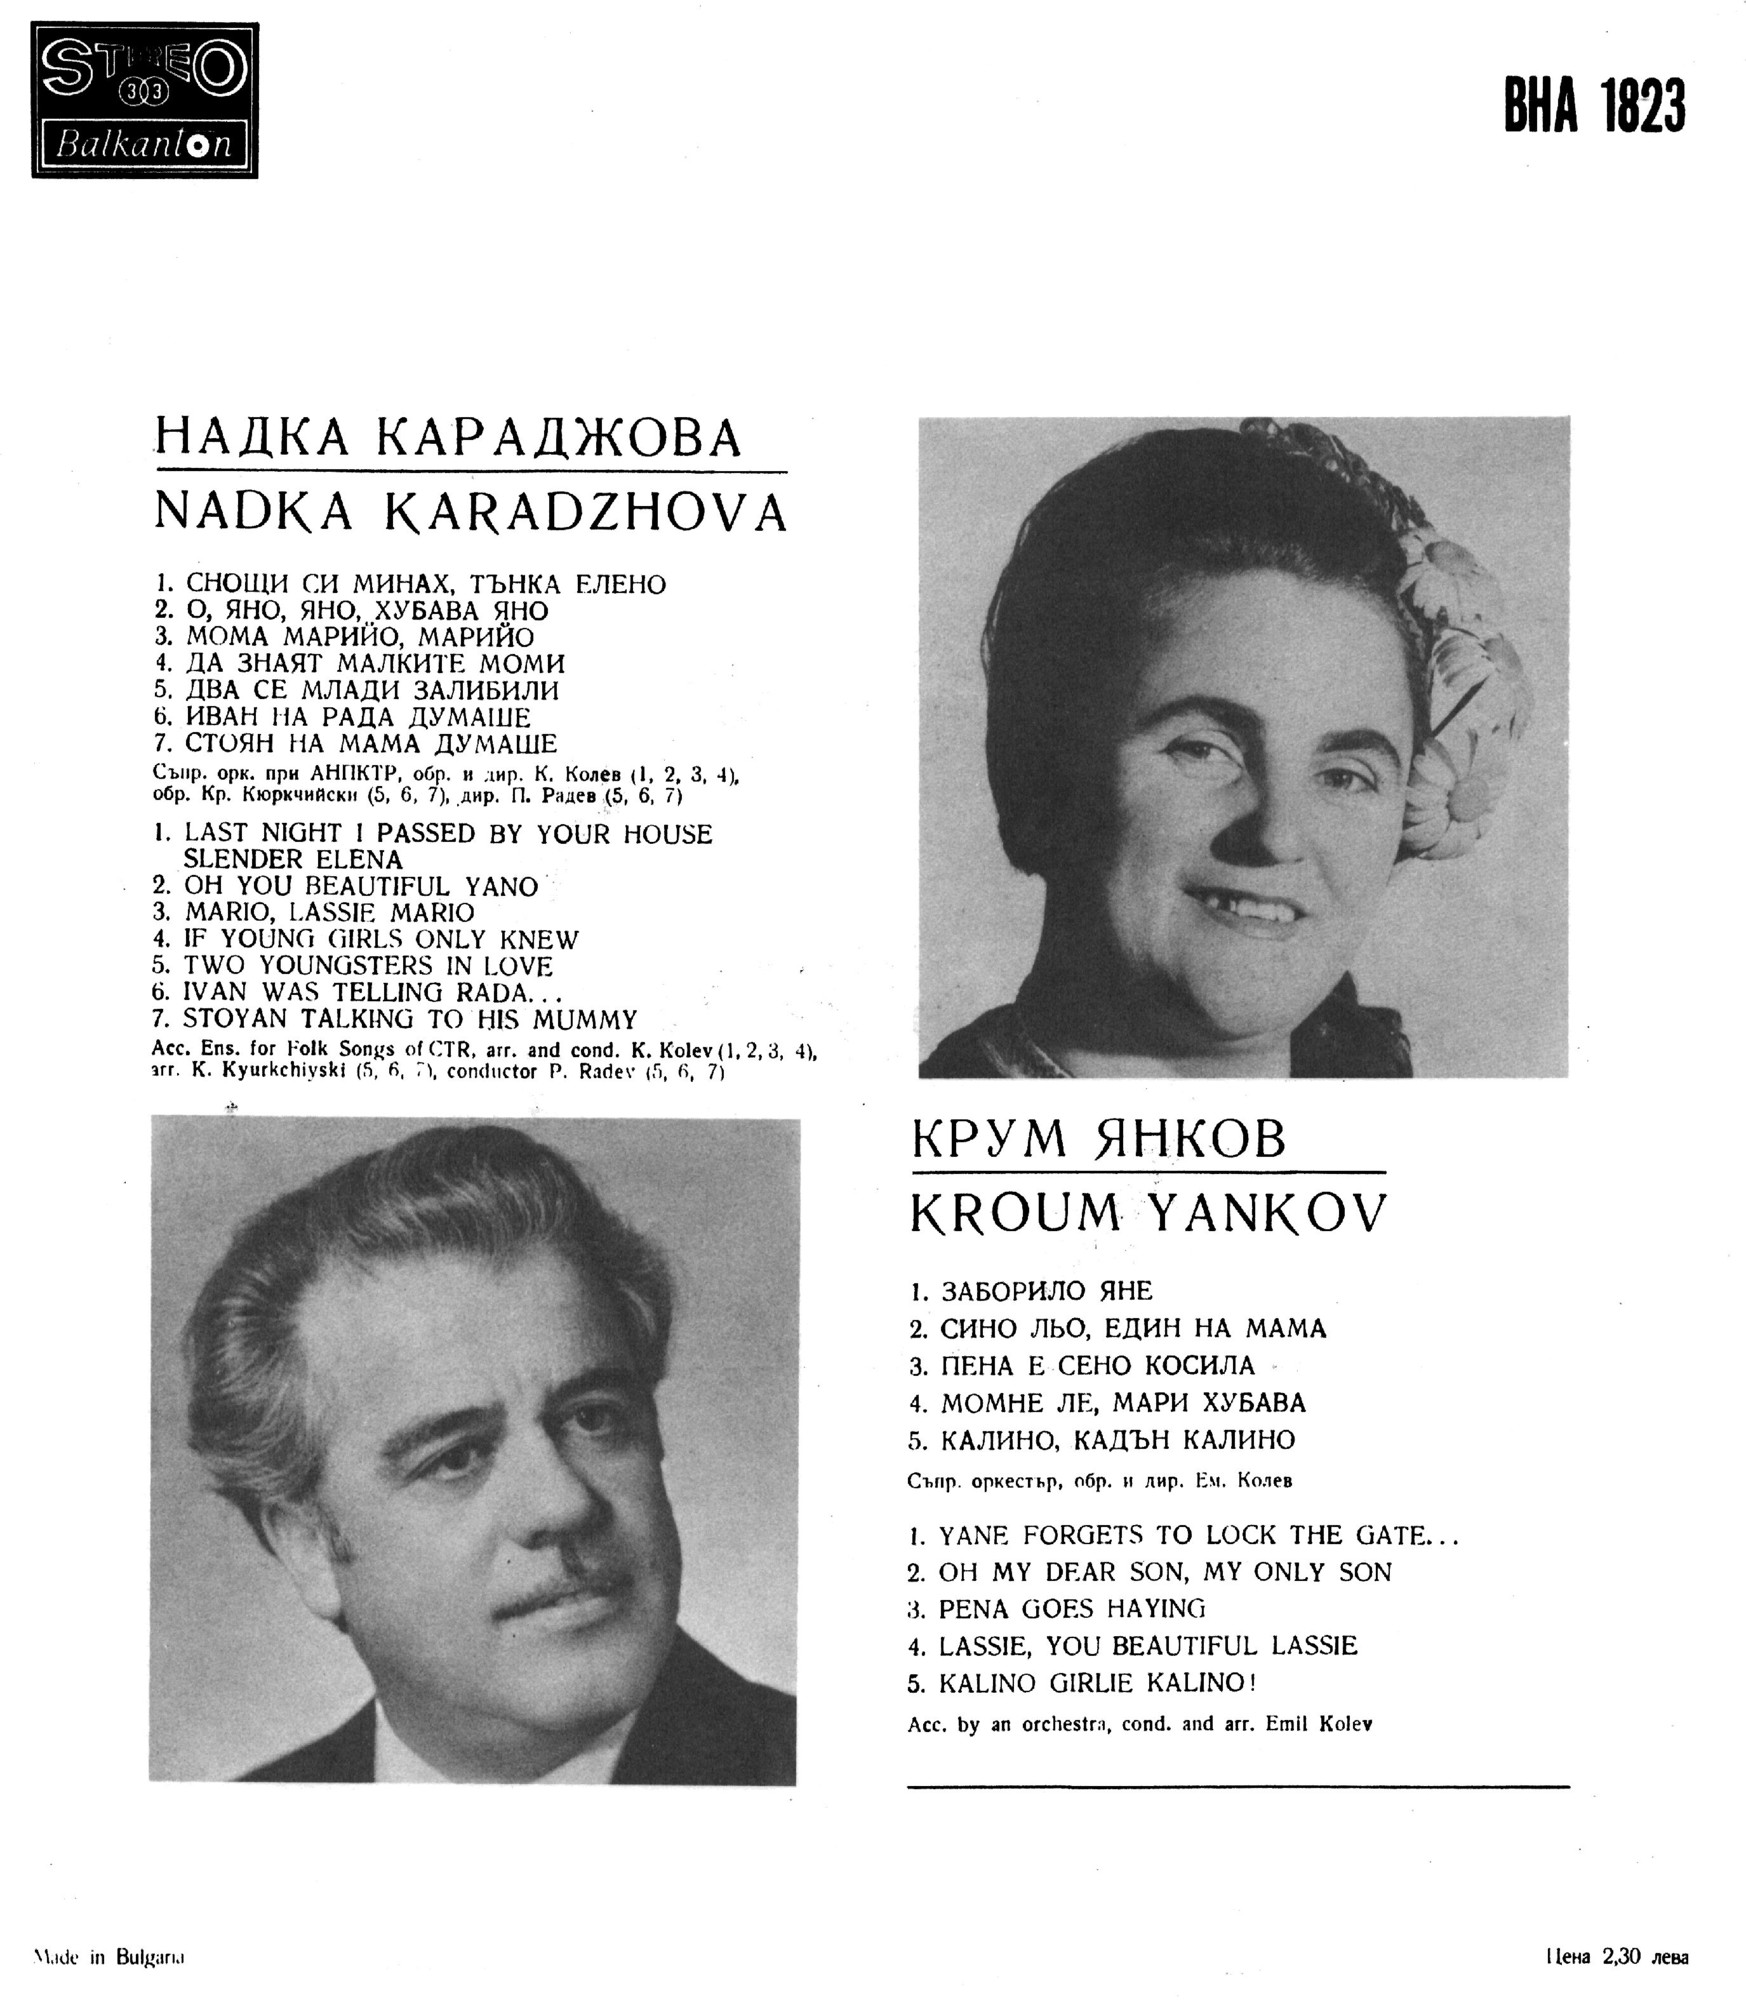 Изпълнения на Надка Караджова и Крум Янков